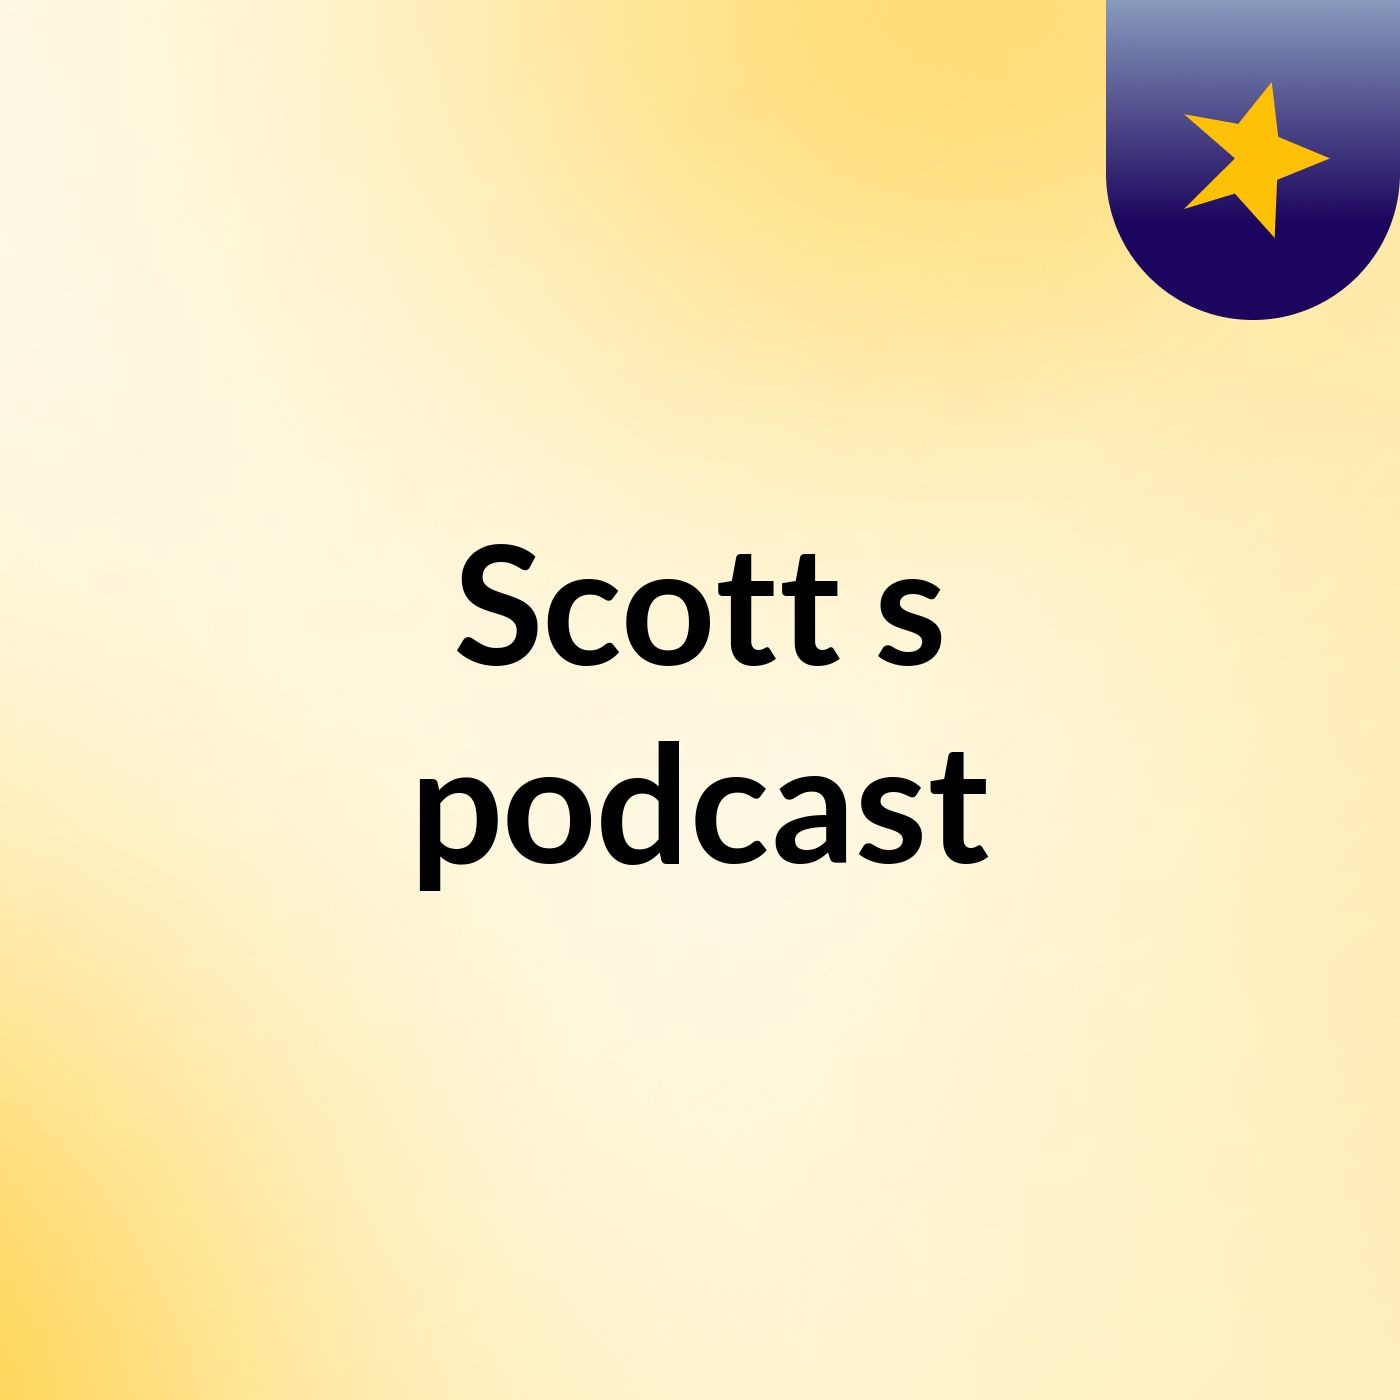 Scott's podcast